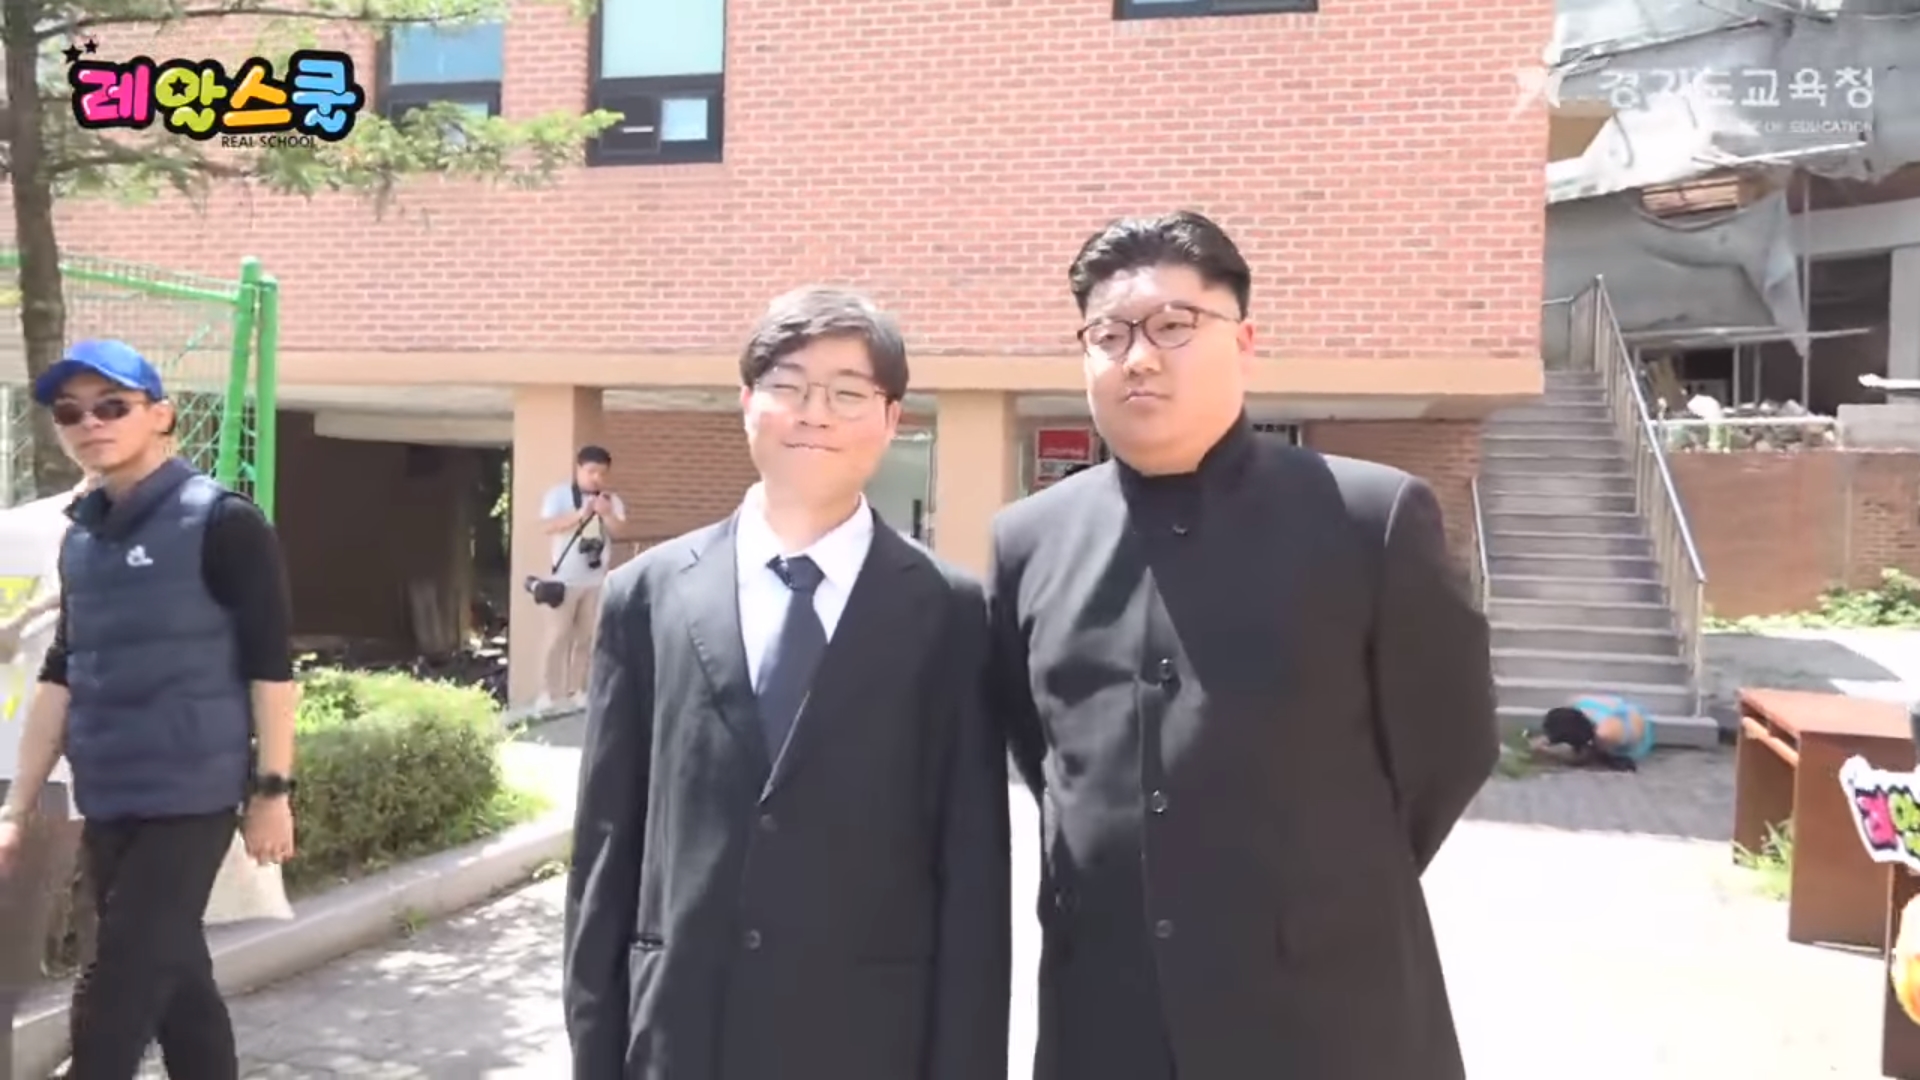 2018년 의정부고 졸업사진. 2018.7.16  경기도교육청 유튜브